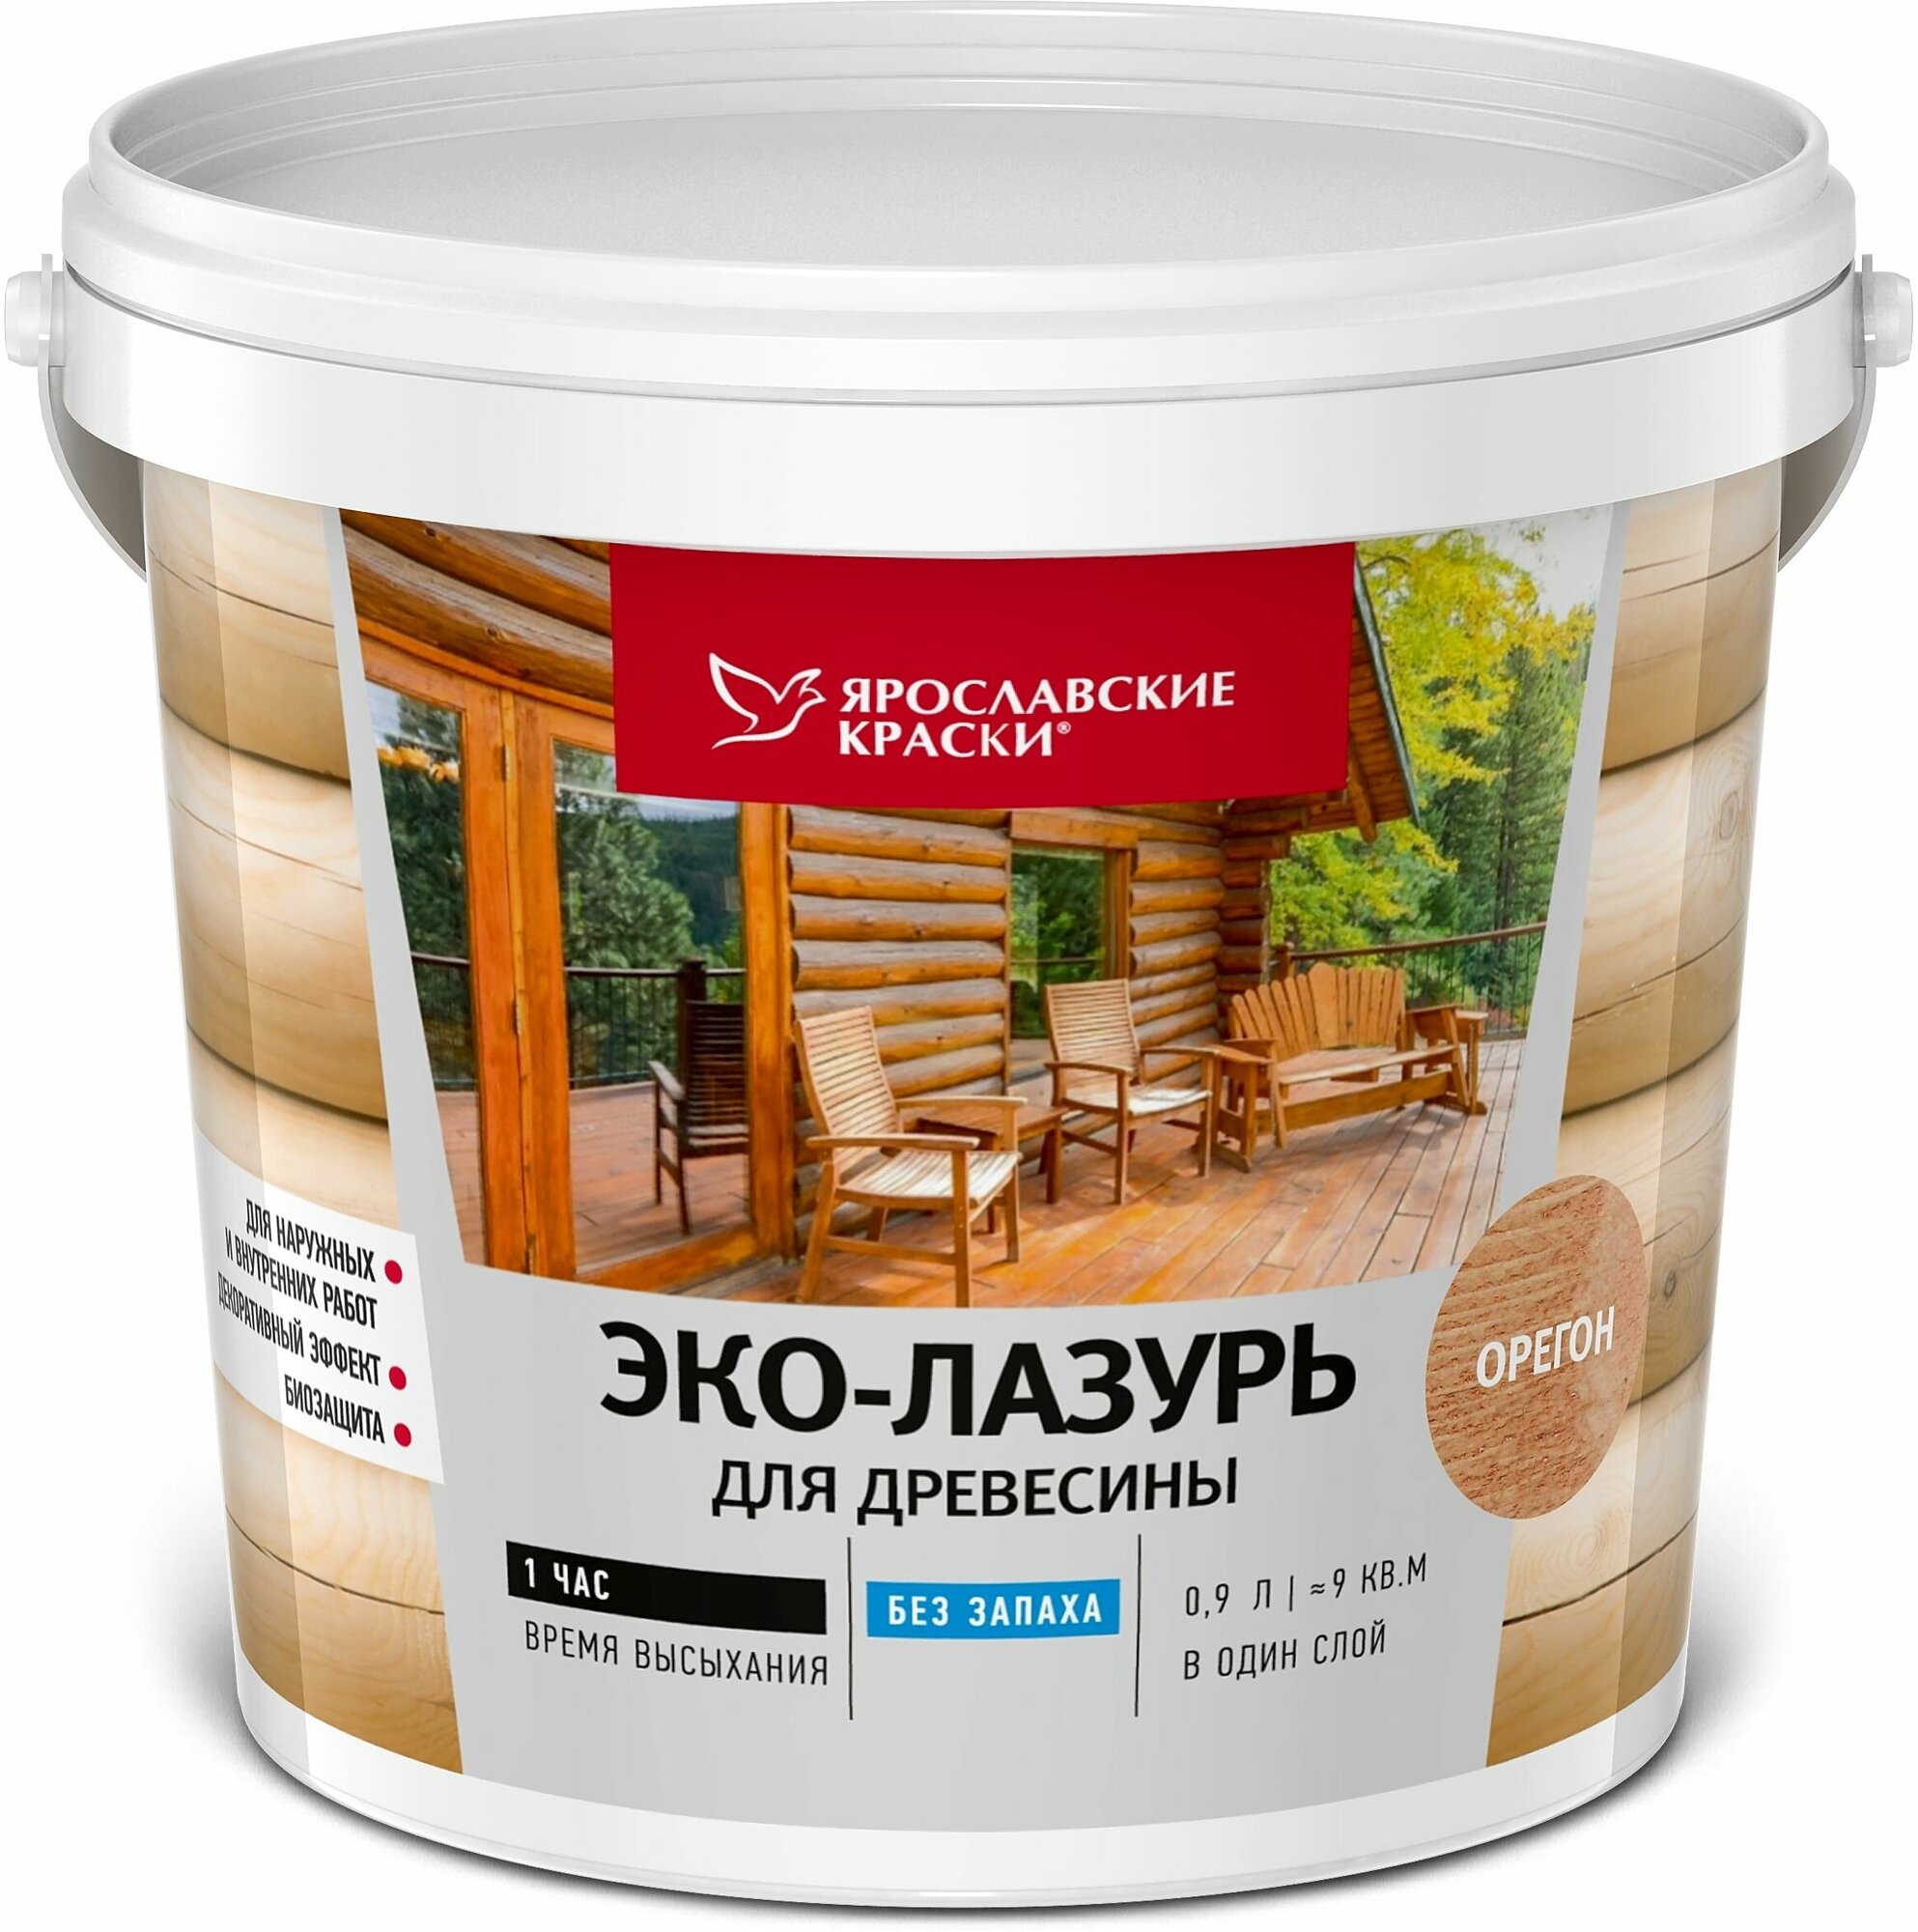 Пропитка для древесины Ярославские краски Эко-лазурь с декоративным эффектом и биозащитой цвет орегон 0.9 л